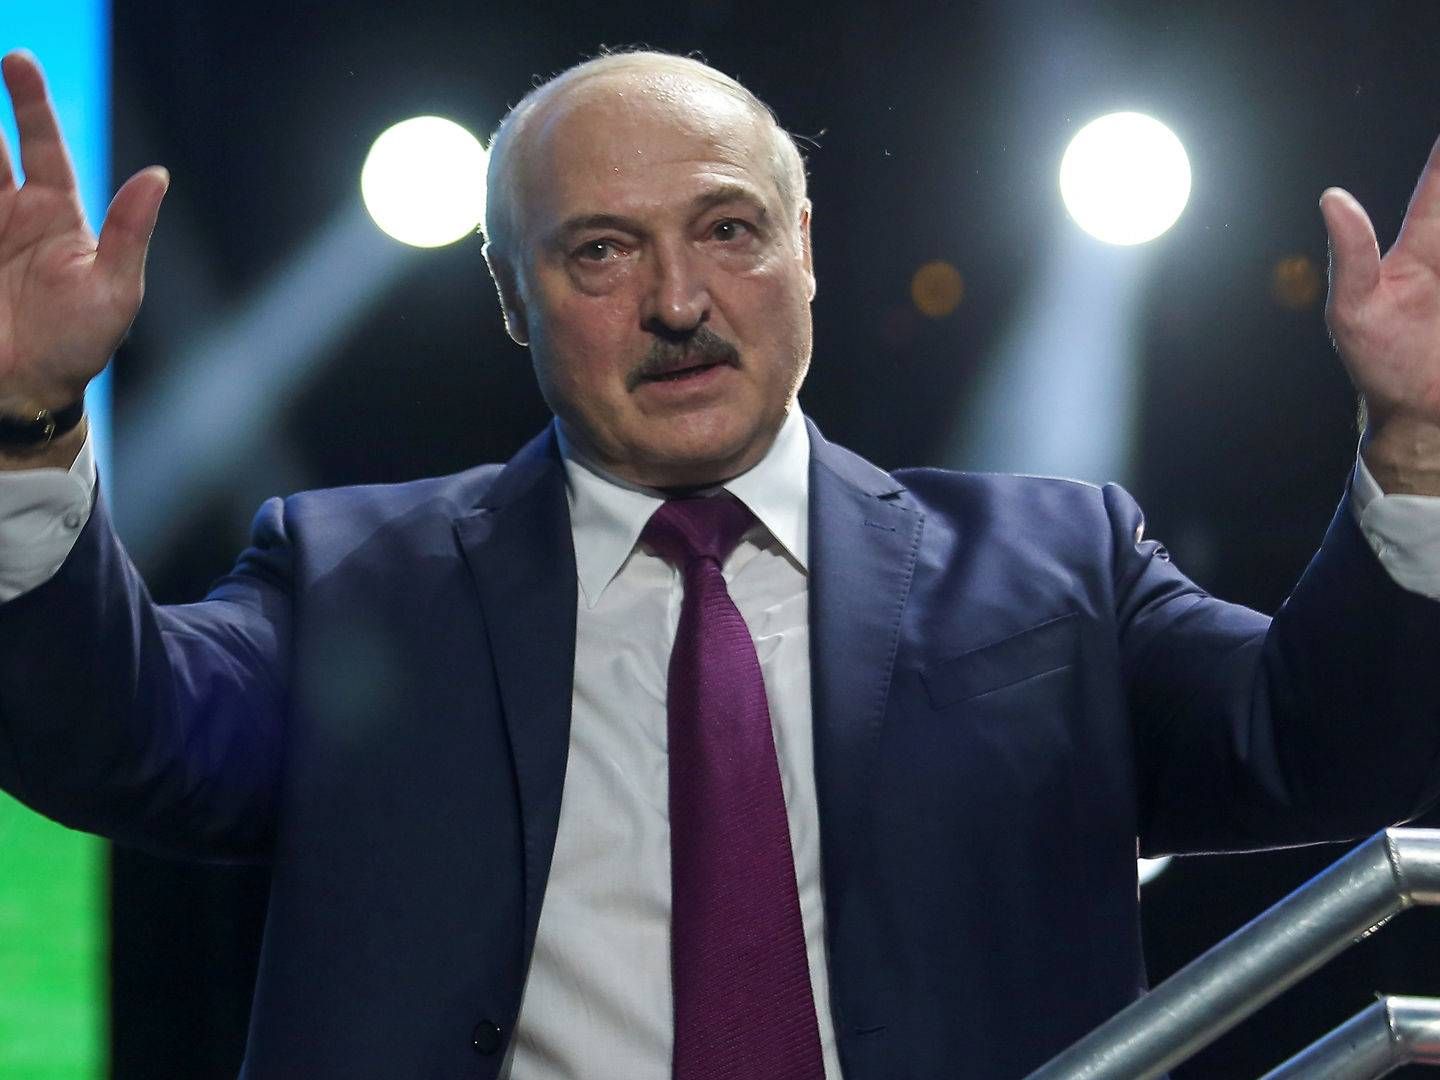 Den hviderussiske præsident Aleksandr Lukasjenko - også kendt som Europas sidste diktator. | Foto: Tut.by/Reuters/Ritzau Scanpix